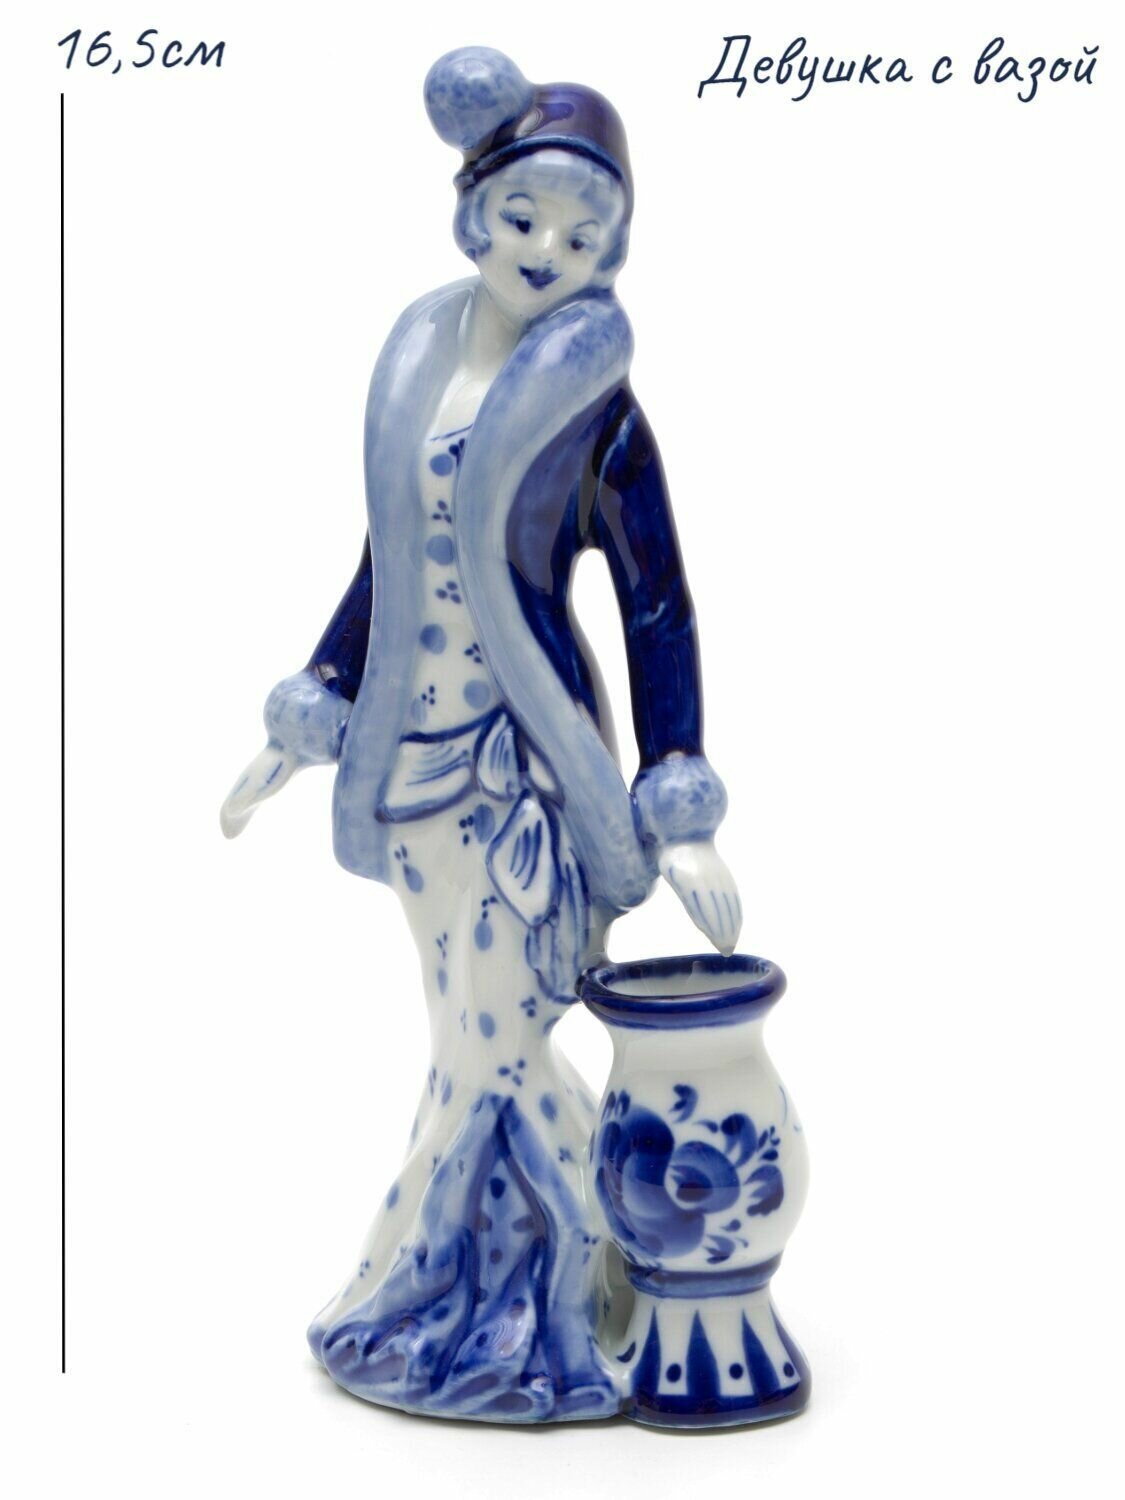 Скульптура-колокольчик "Девушка с вазой", высота 16,5см, кобальт